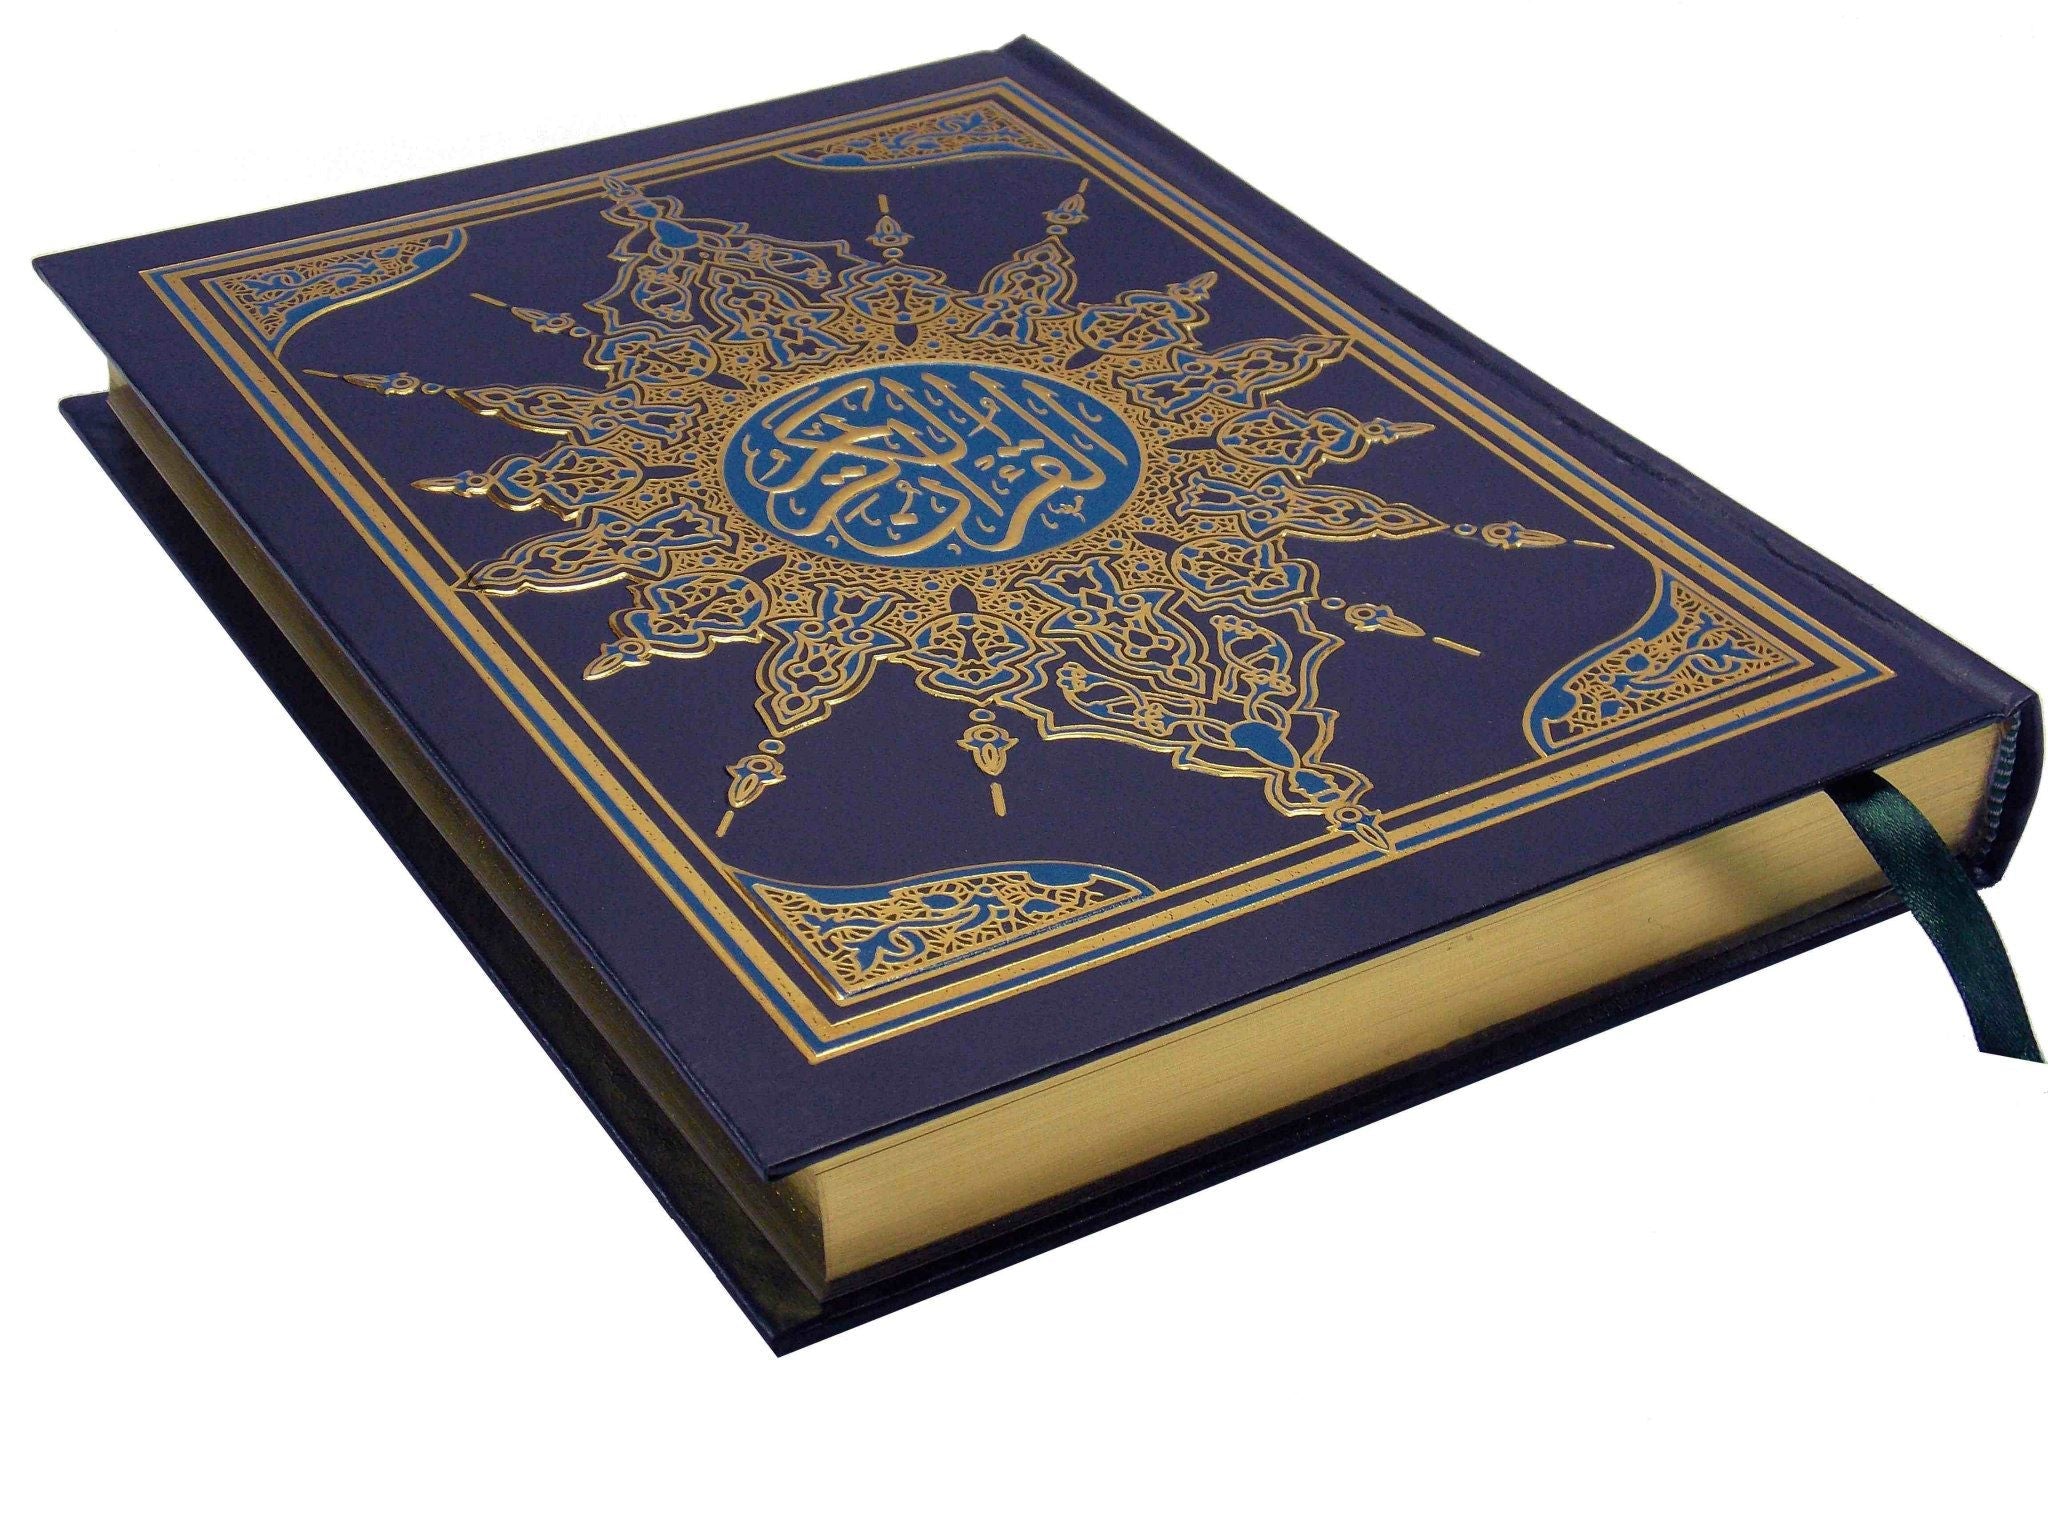 القرآن الكريم بالرسم العثماني كتب إسلامية السحار للطباعة أزرق 17*24